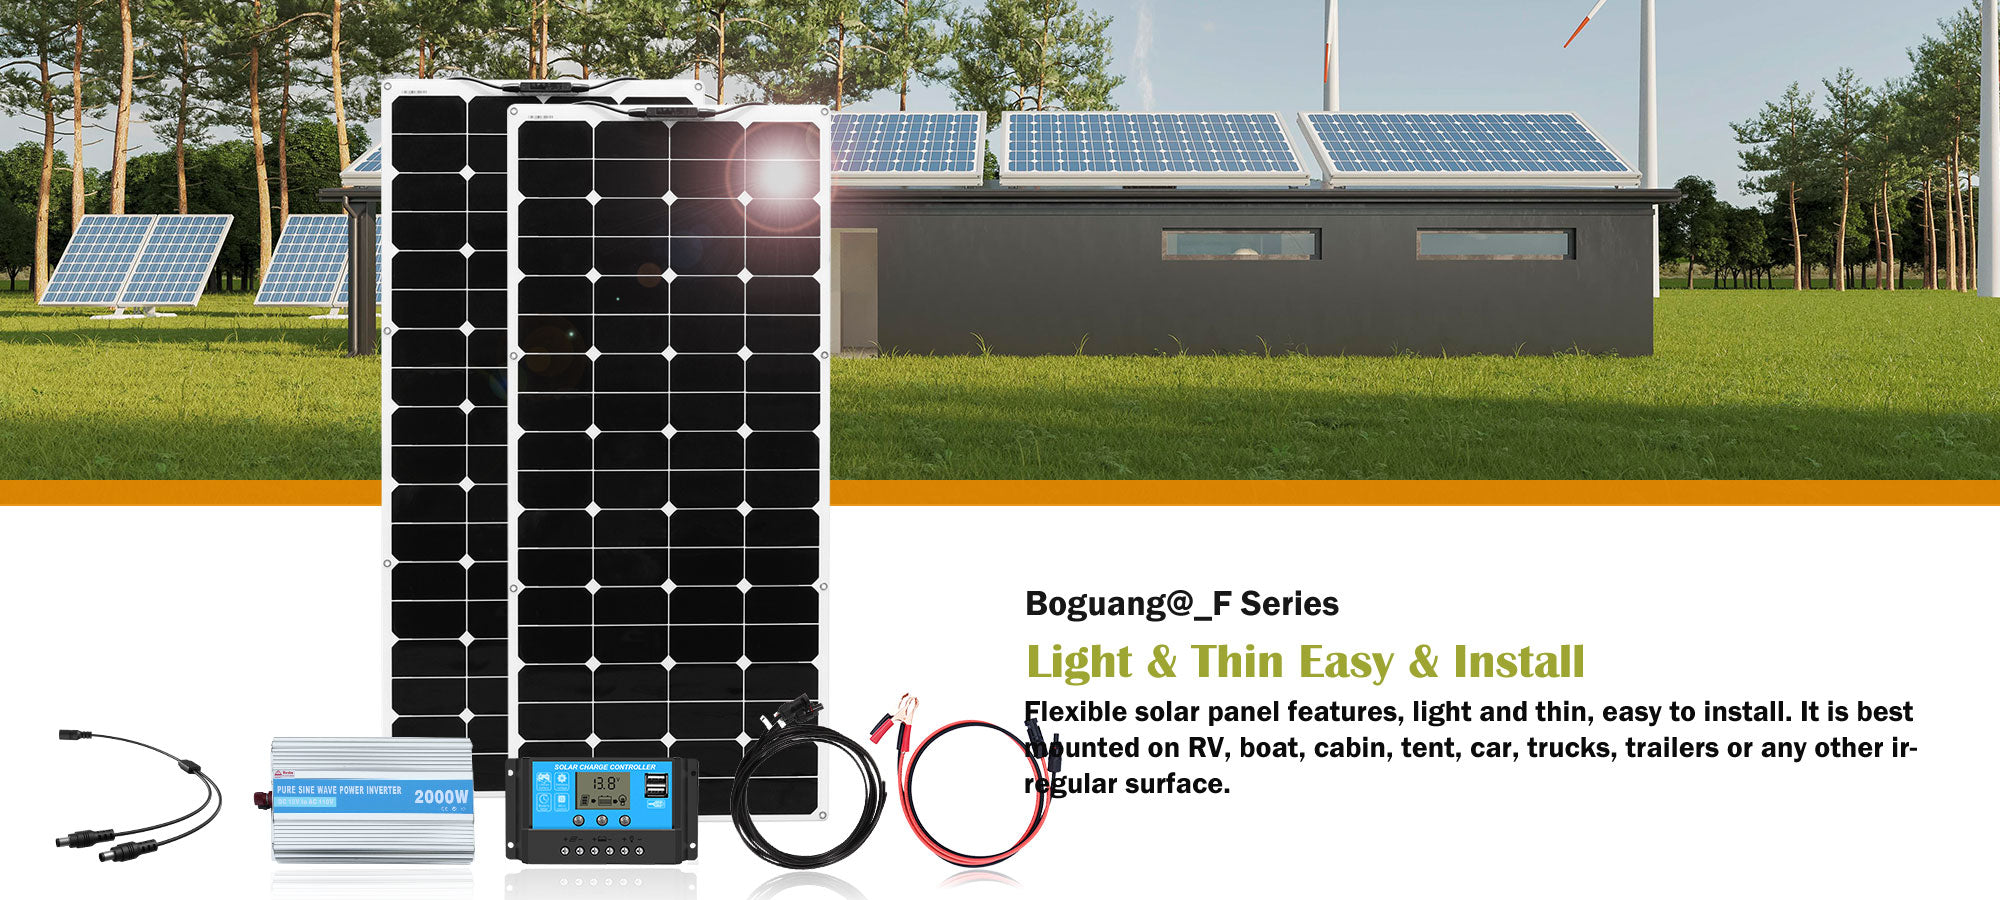 Boguang@_F Series-solar panel kit